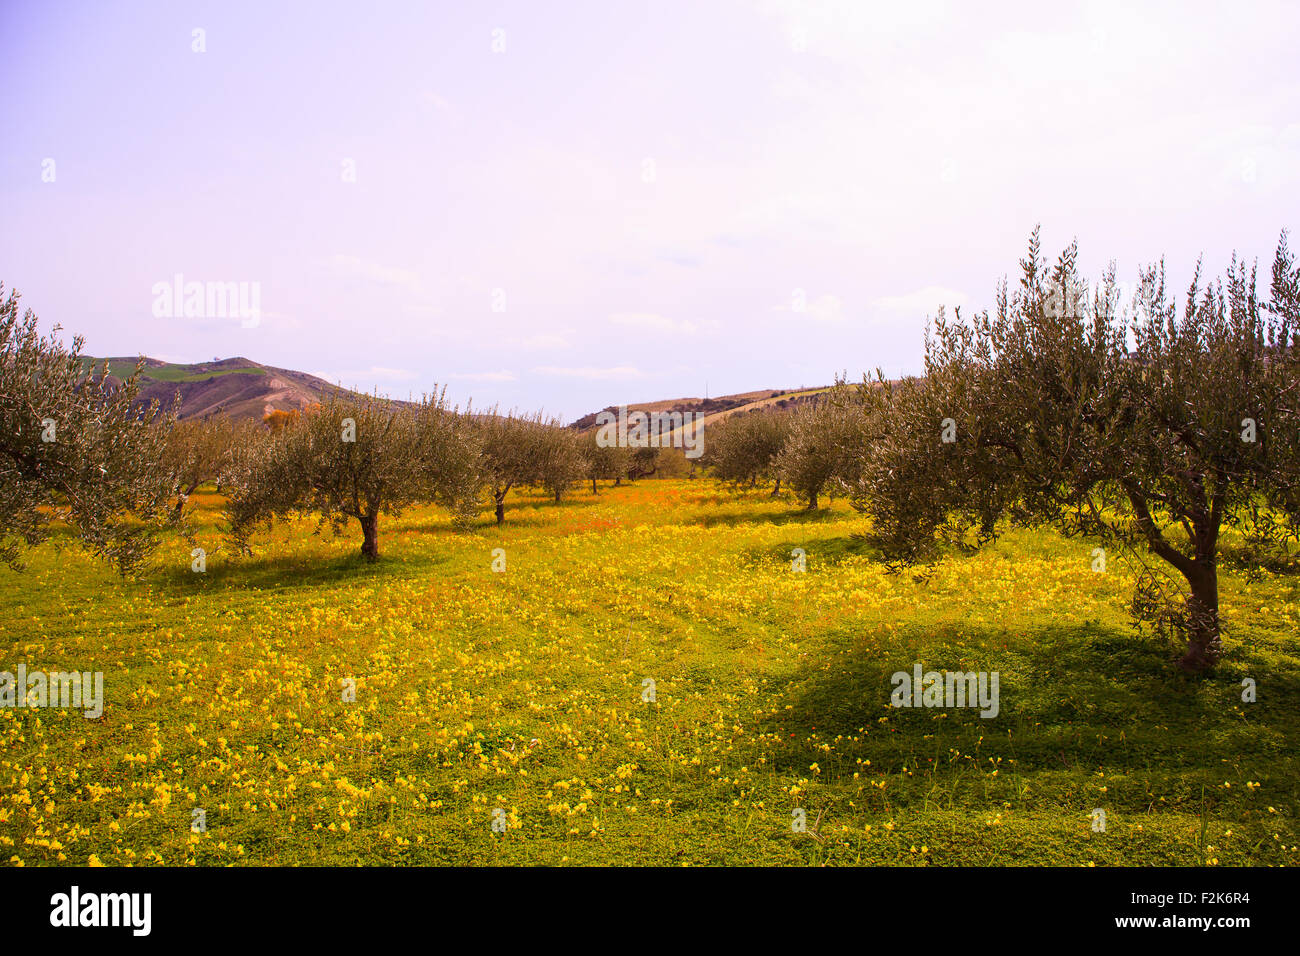 Ansicht der sizilianischen Landschaft in die Frühjahrssaison, Olivenbäume und bunte Blumen Stockfoto